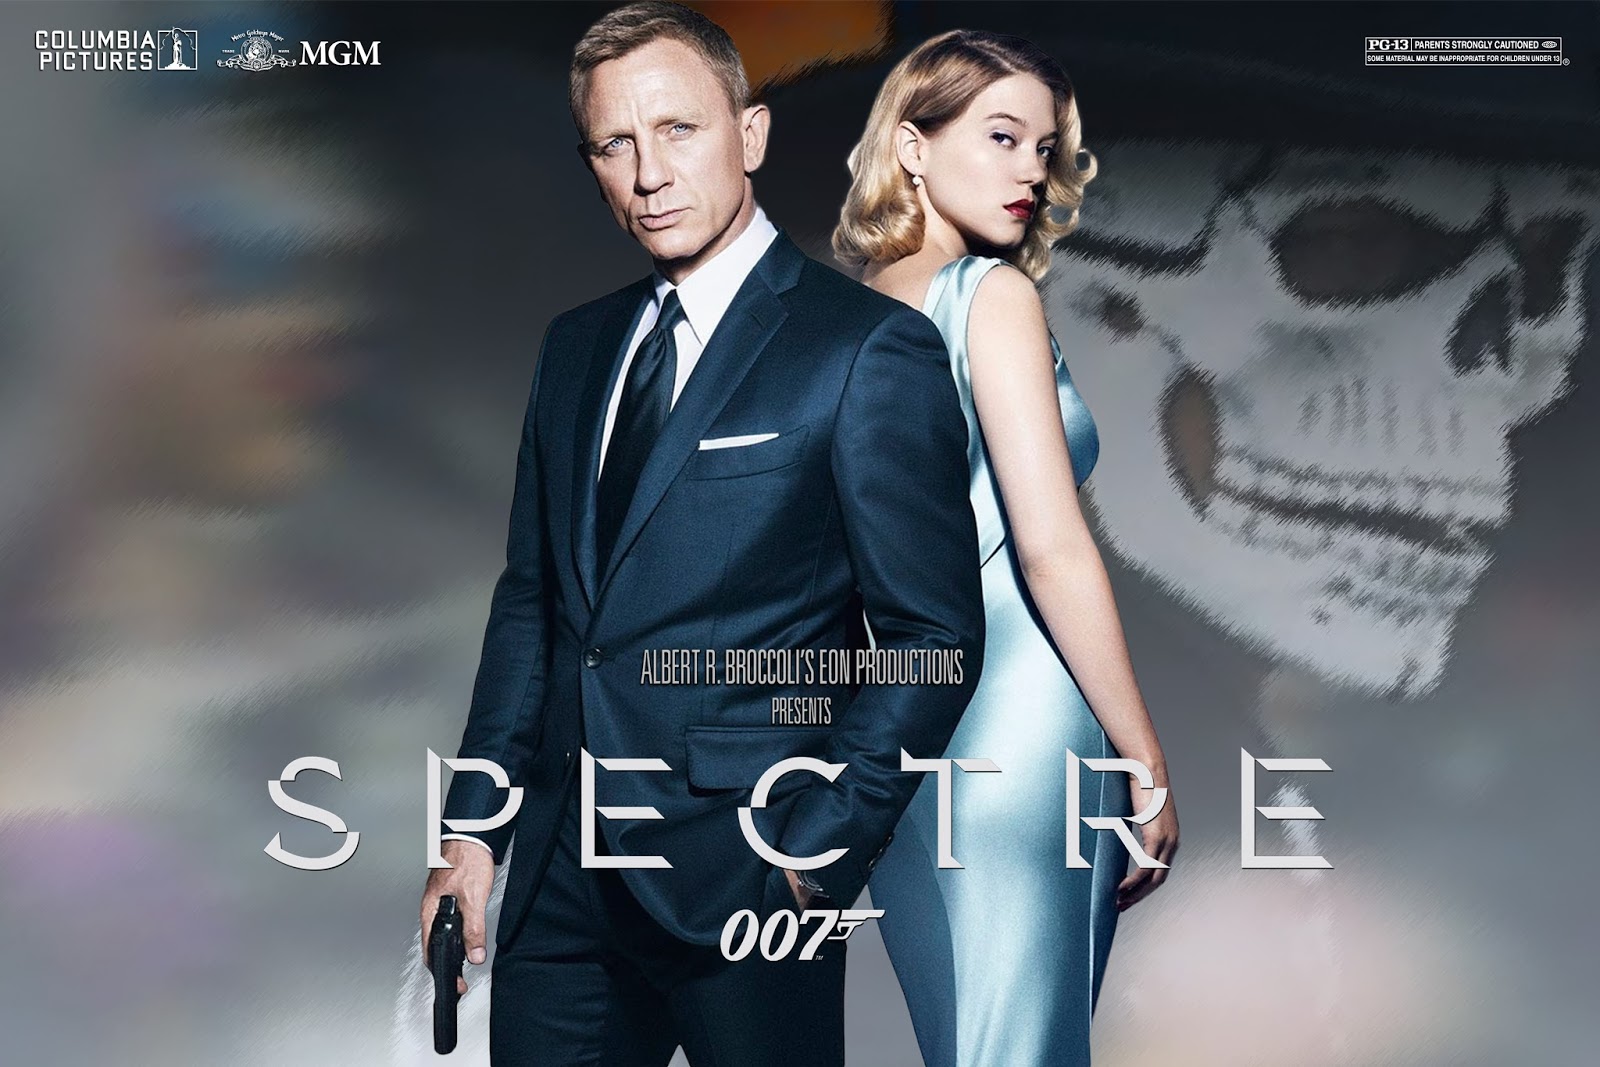 Макс Денби 007 спектр. 007 Спектр Постер. 007 Спектр реклама часов. 007 спектр 2015 качество